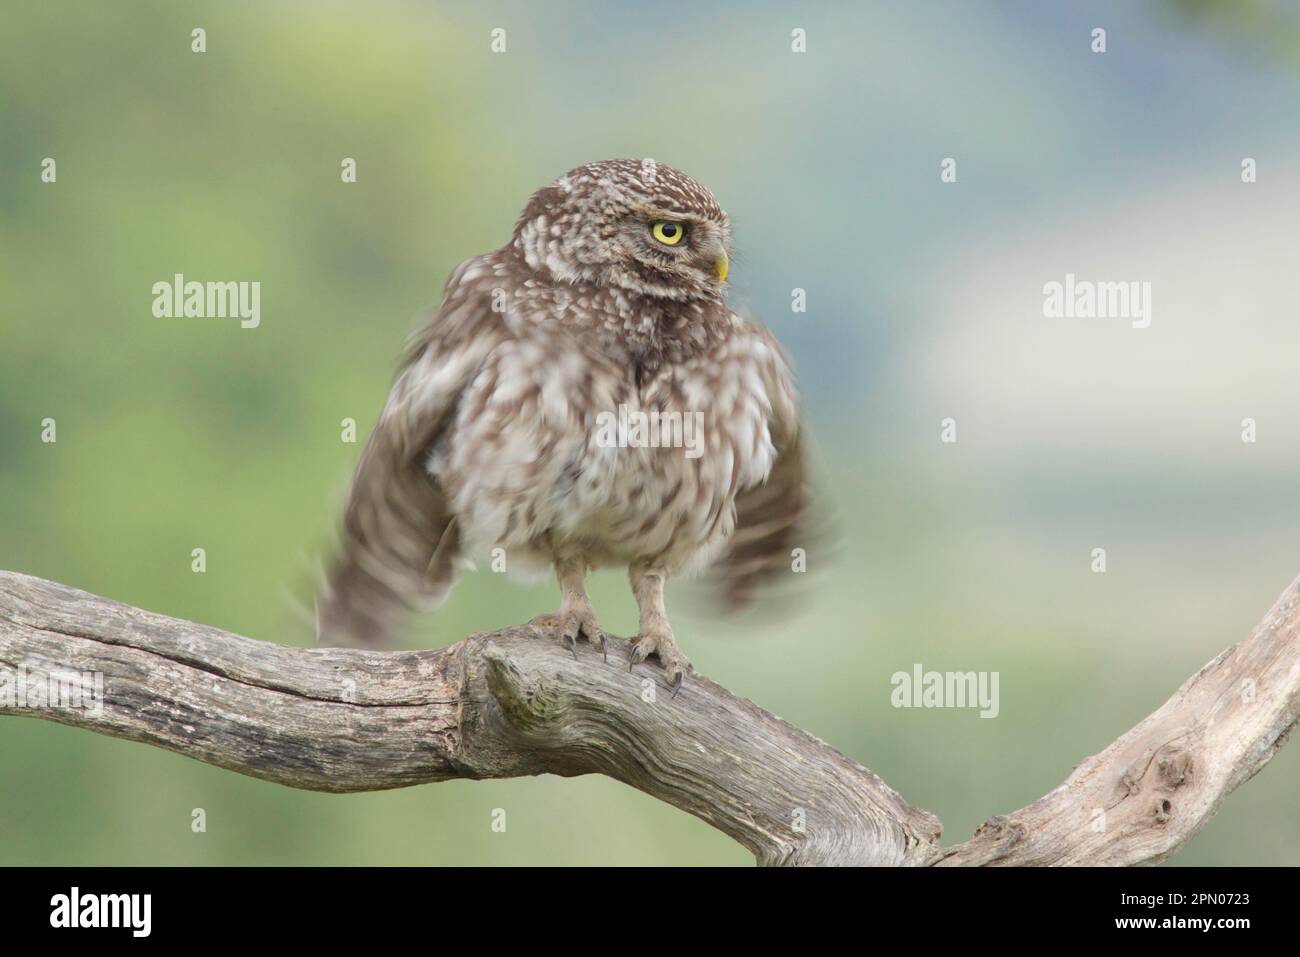 Little Owl (Athene noctua) adulte, plumes de ronflement et ailes de flopping, perchées sur une branche morte dans les terres agricoles, West Yorkshire, Angleterre, Royaume-Uni Banque D'Images